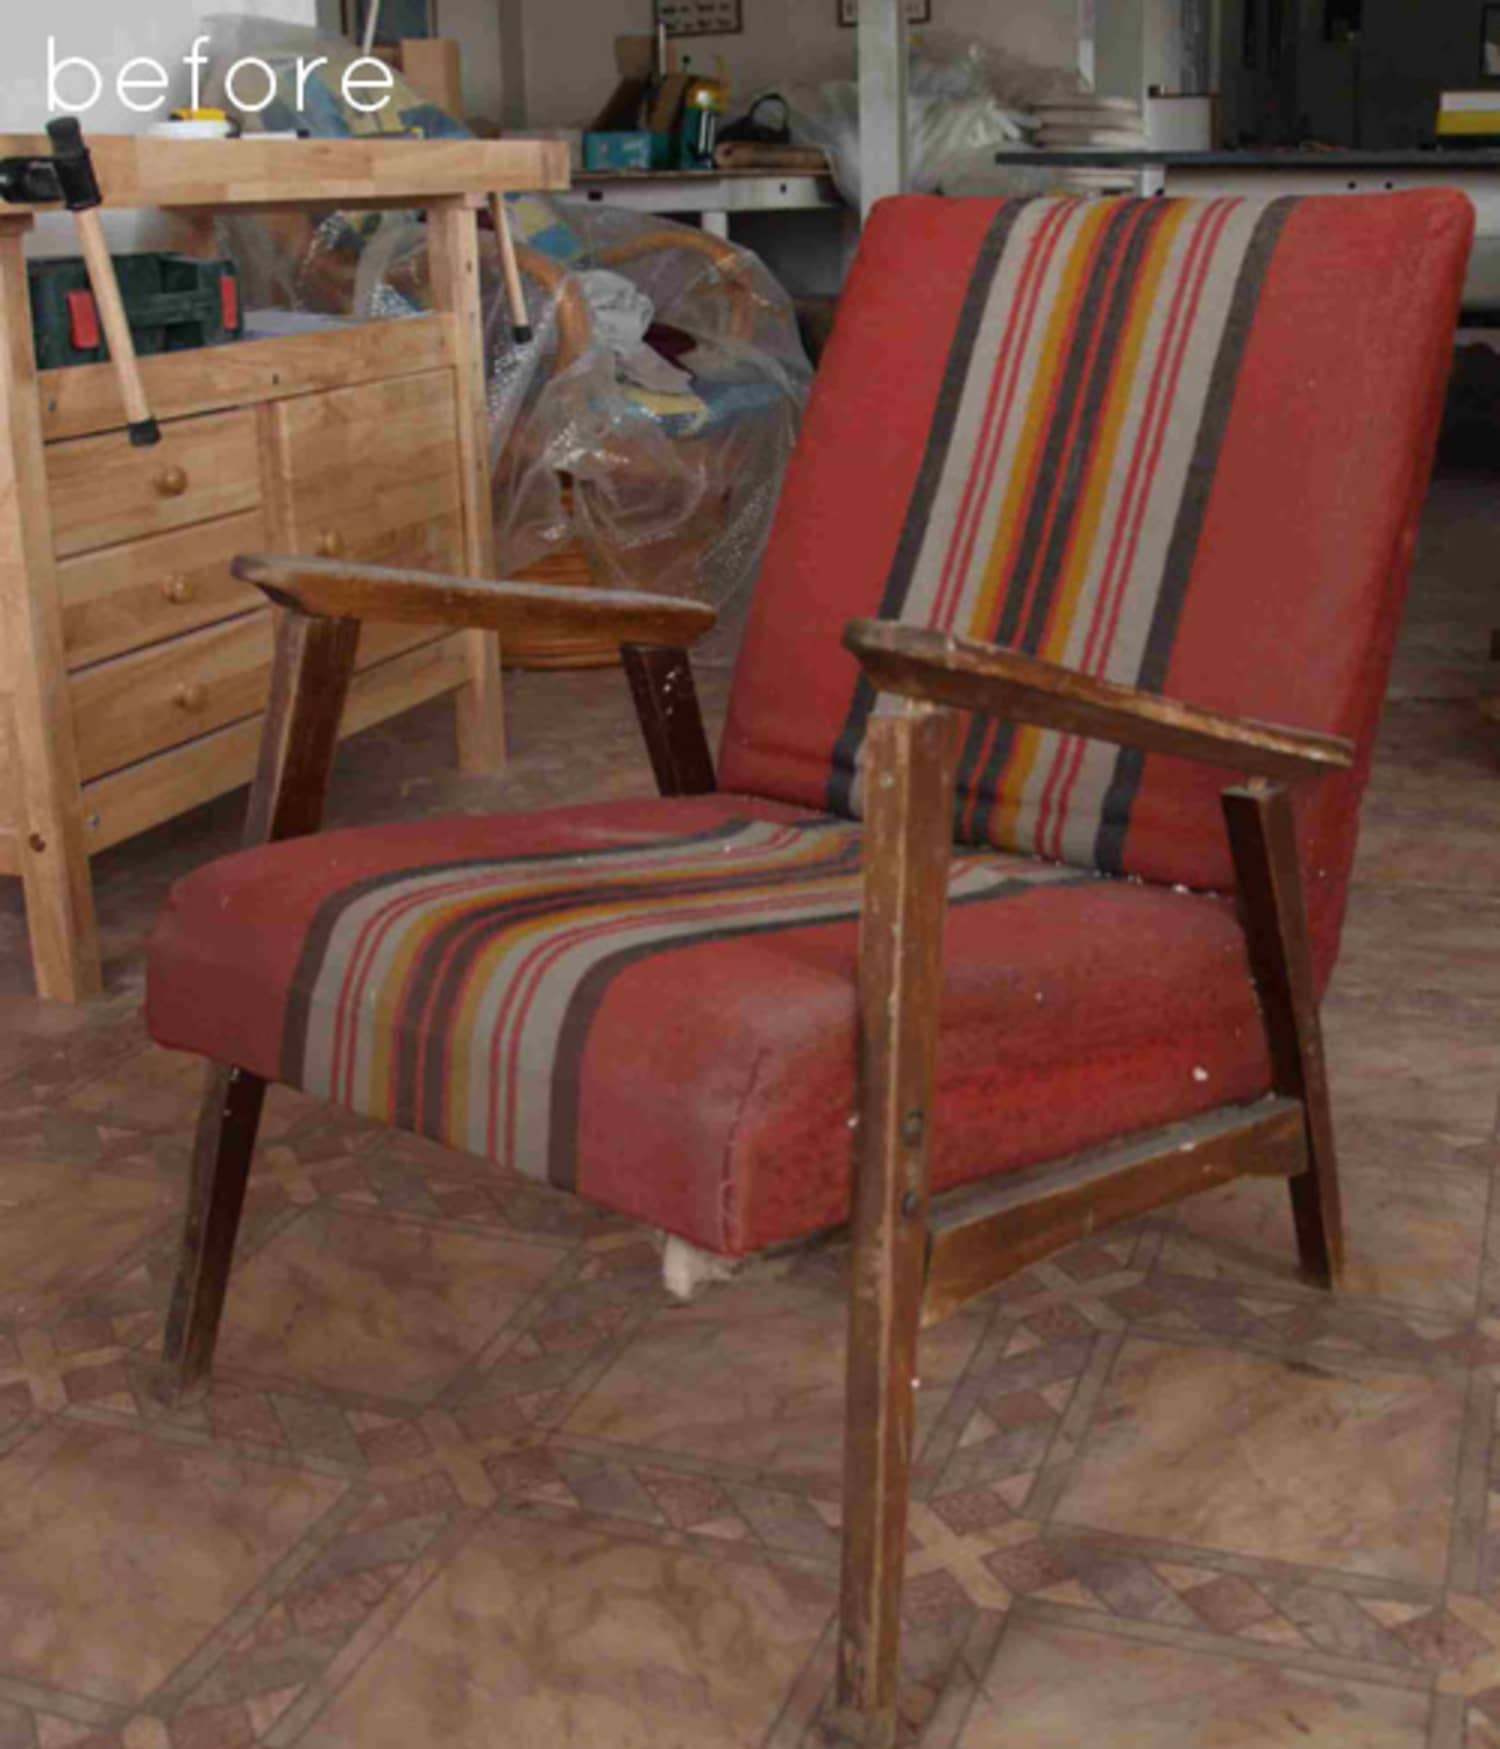 фото реставрации кресла с деревянными